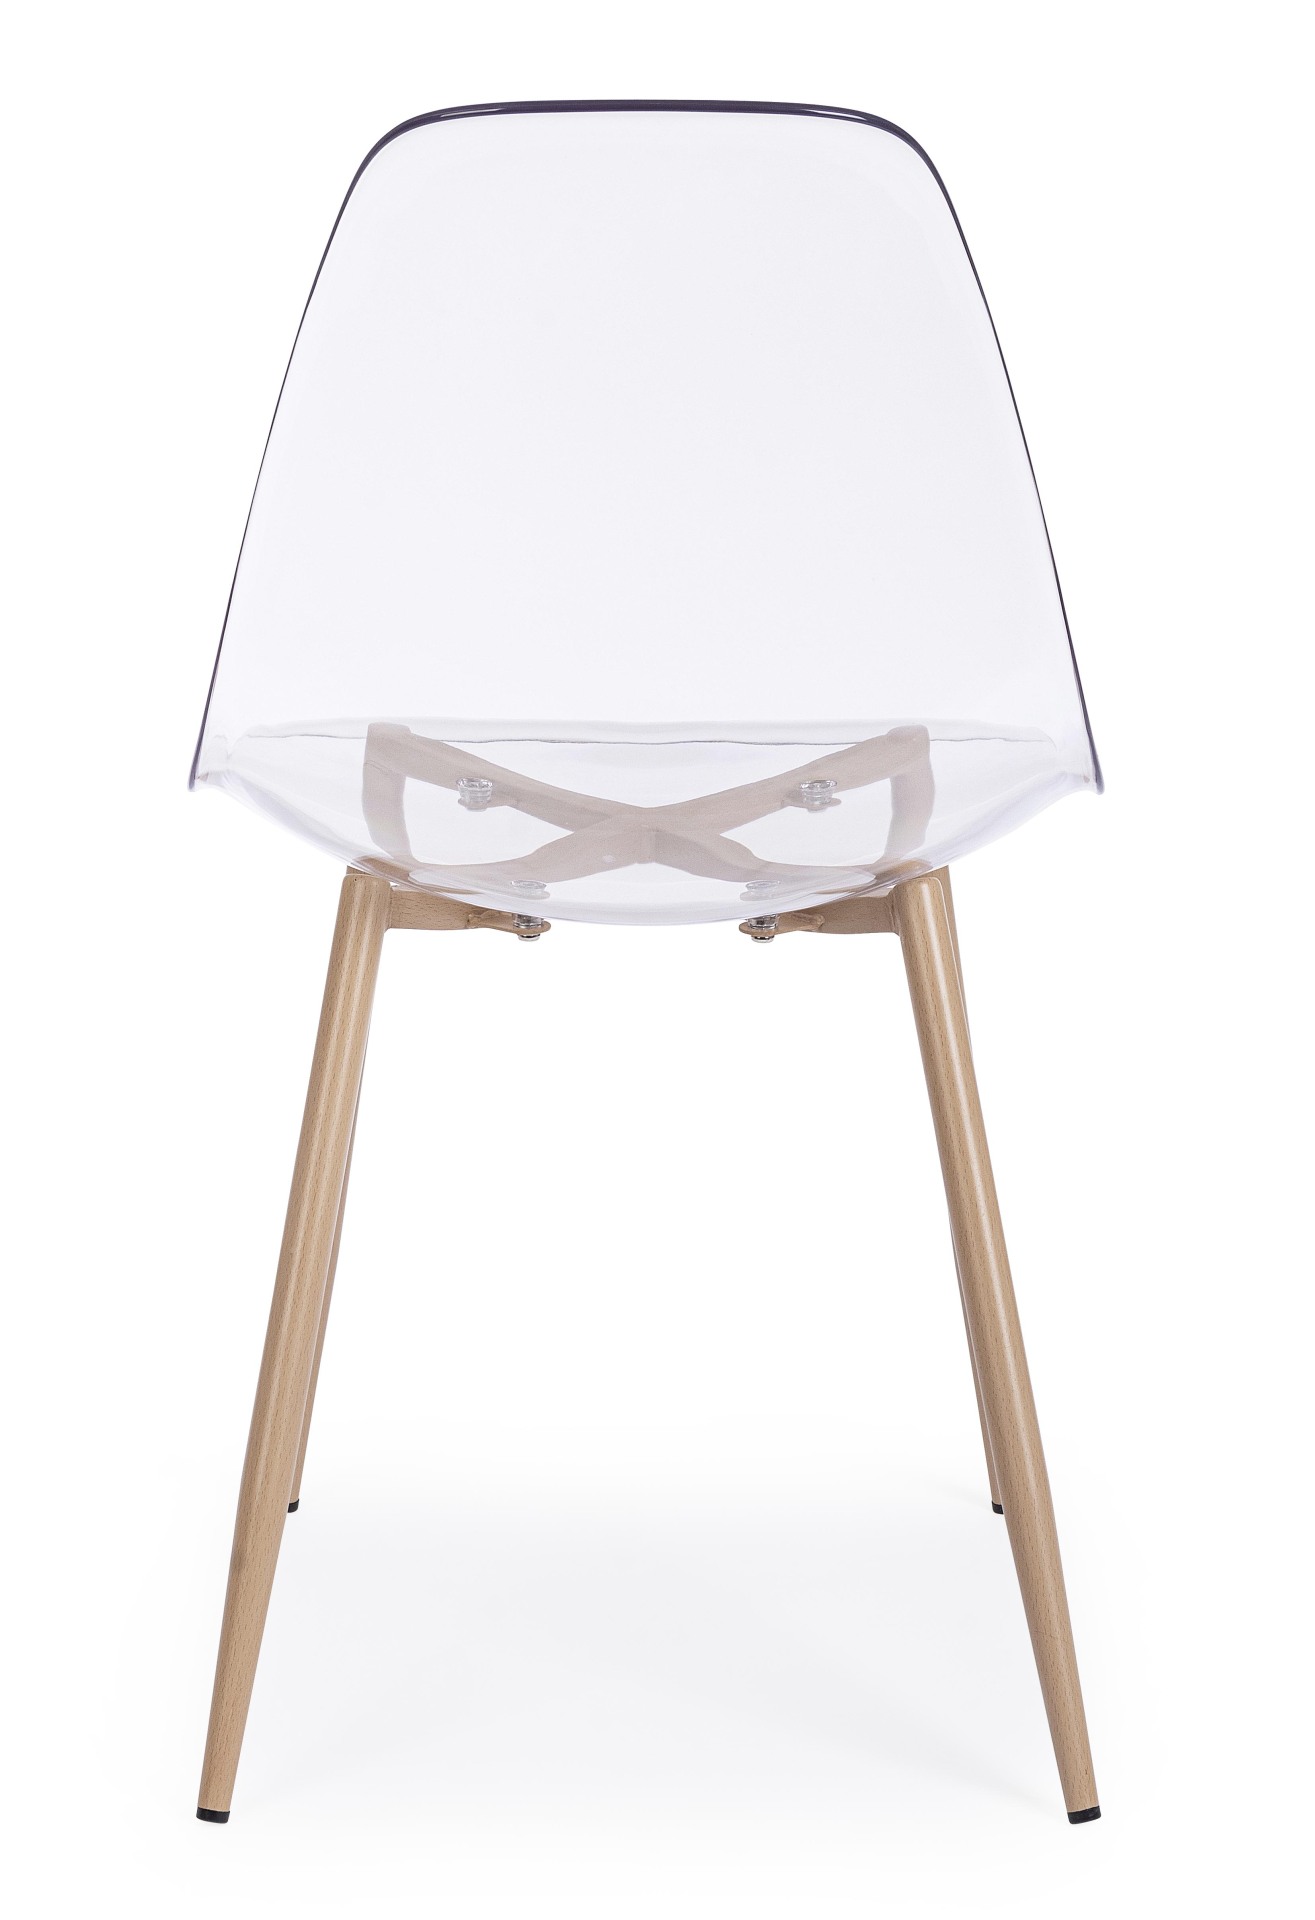 Der Stuhl Mandy überzeugt mit seinem modernem Design. Gefertigt wurde der Stuhl aus Kunststoff, welcher einen transparenten Farbton besitzt. Das Gestell ist aus Metall, welches eine Holz-Optik besitzt. Die Sitzhöhe des Stuhls ist 45 cm.